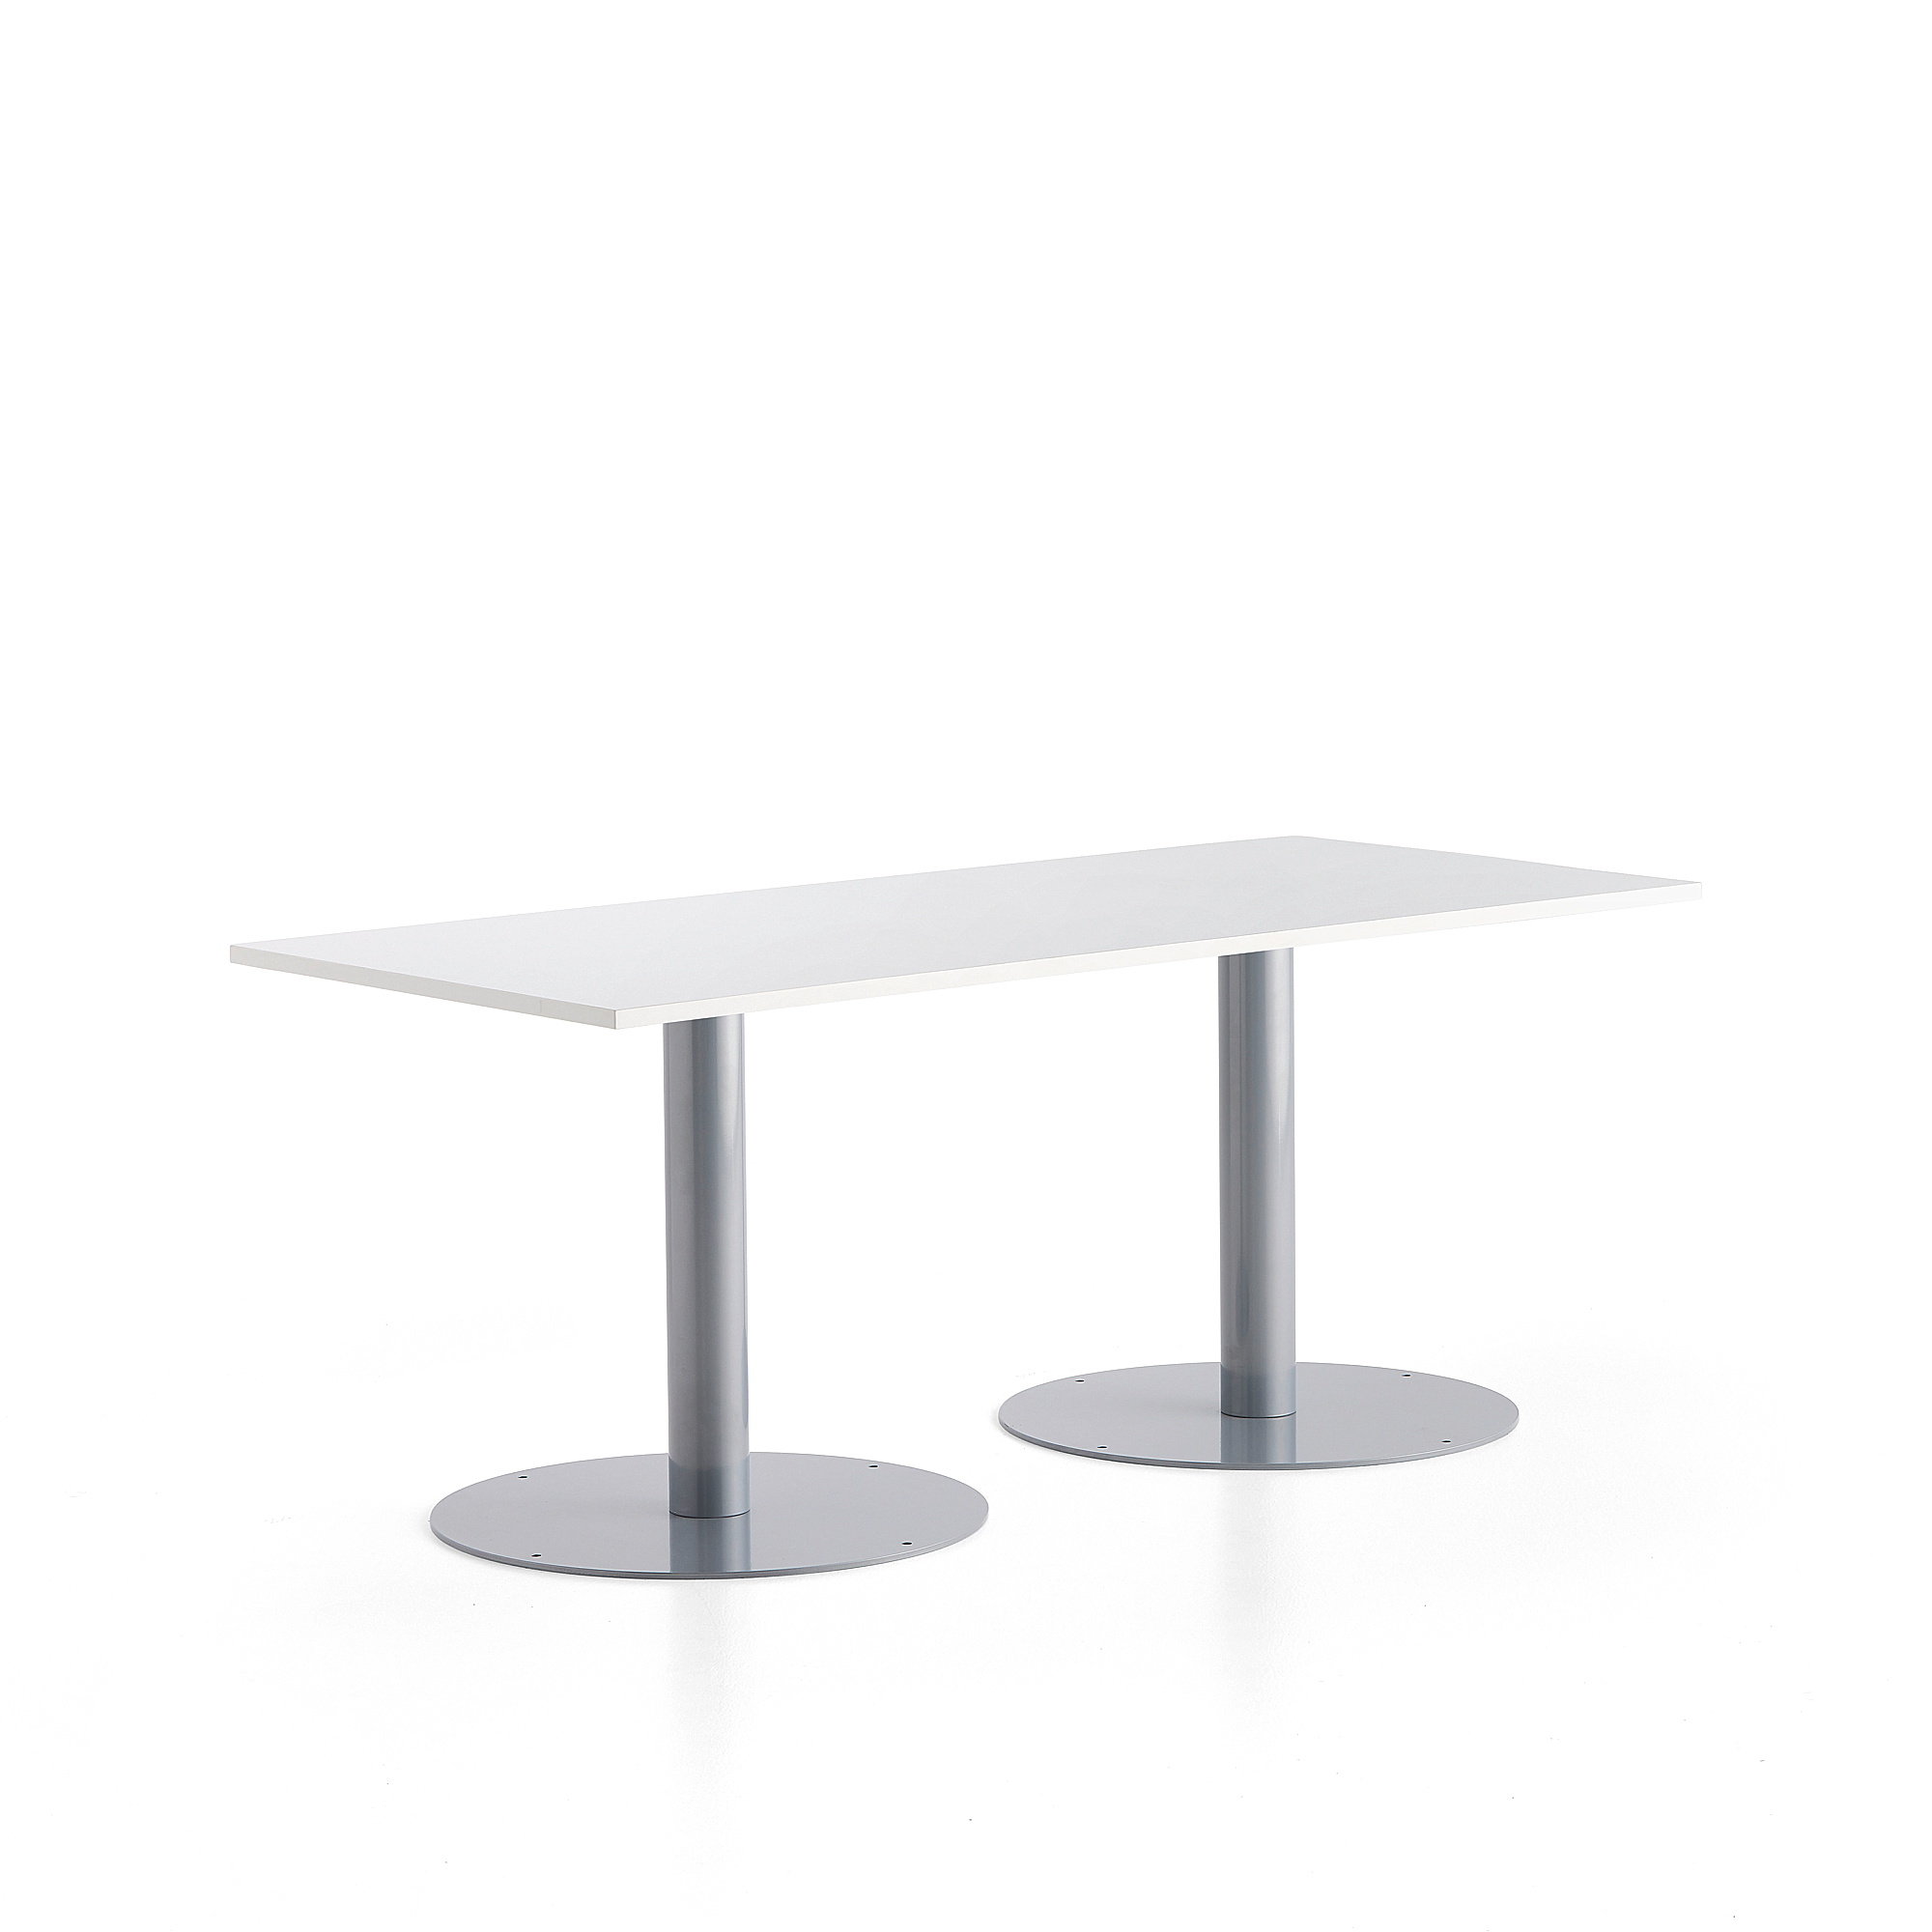 Stůl ALVA, 1800x800x720 mm, stříbrná, bílá